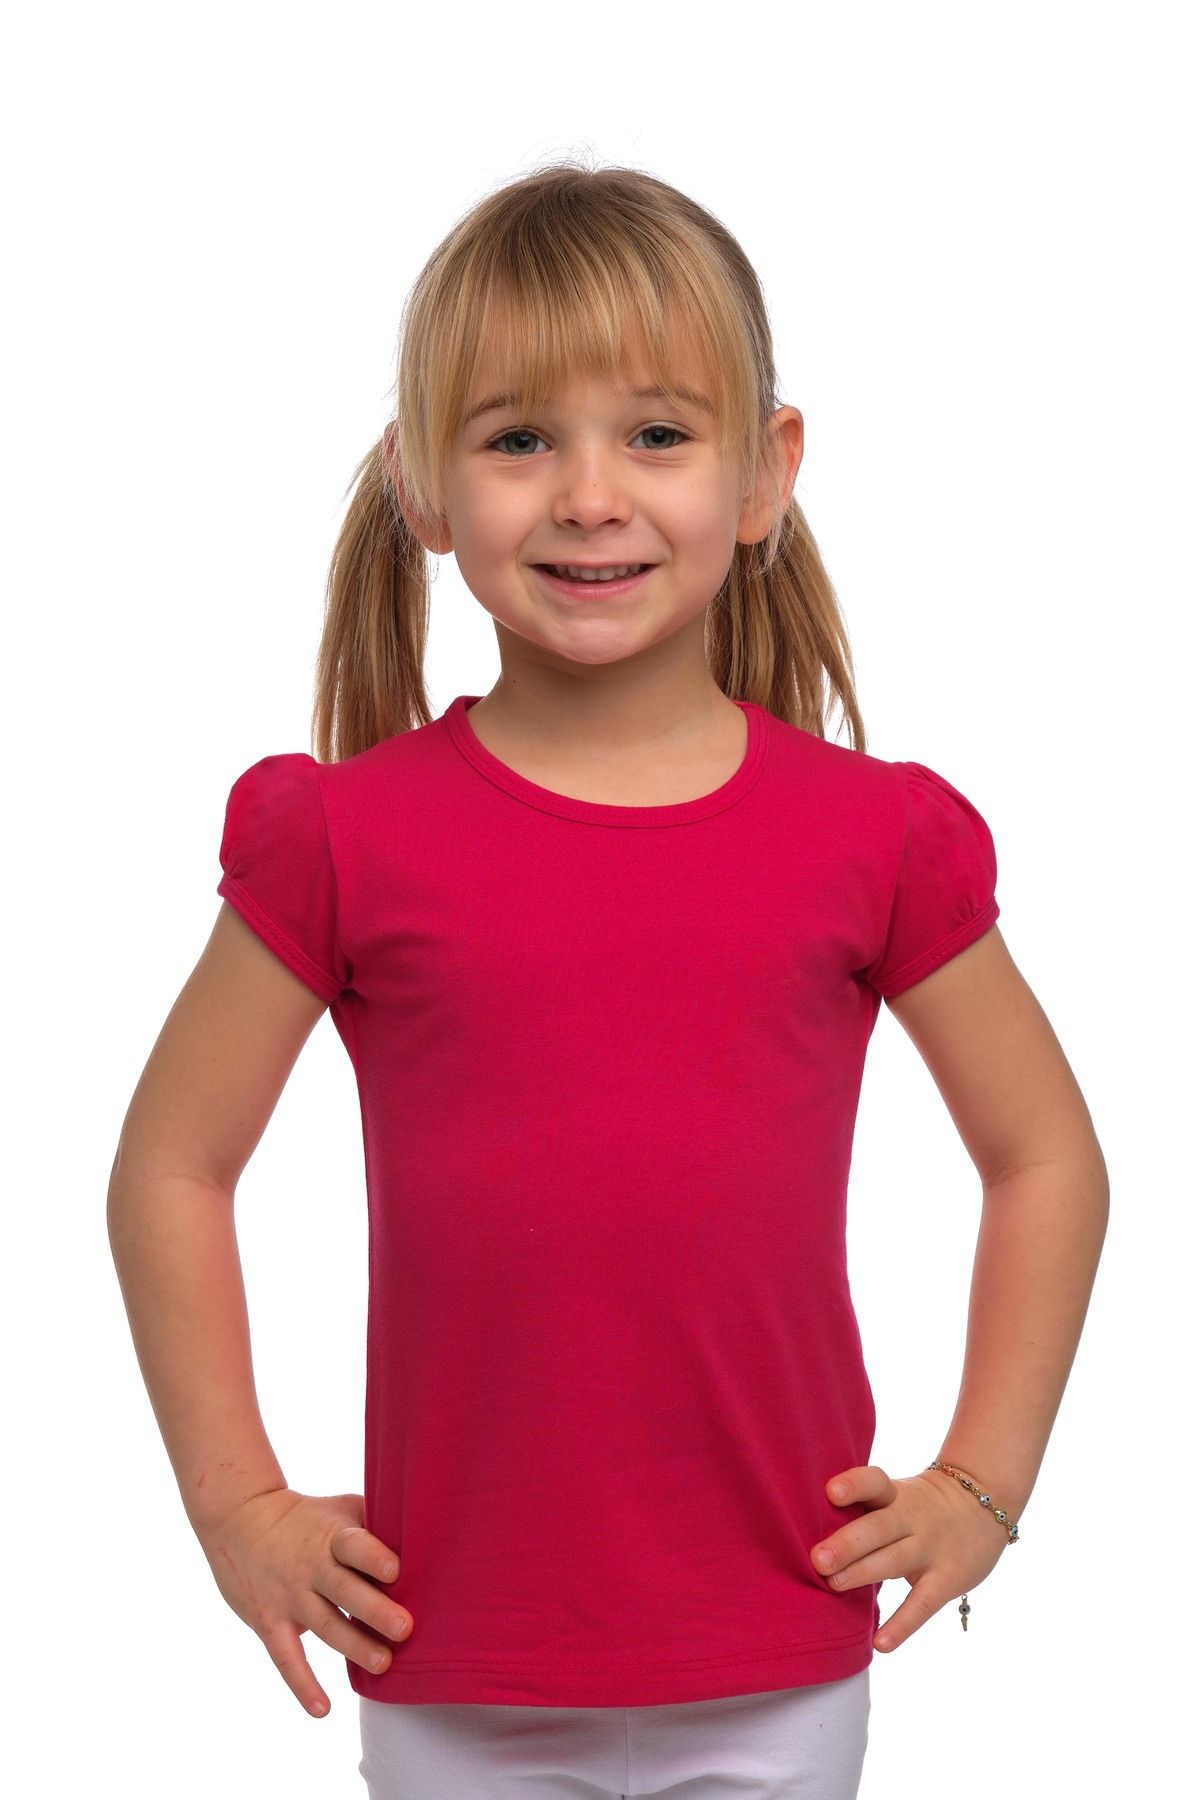 LOVETTI Koyu Fuşya Kız Çocuk Kısa Kollu Basıc Tişört